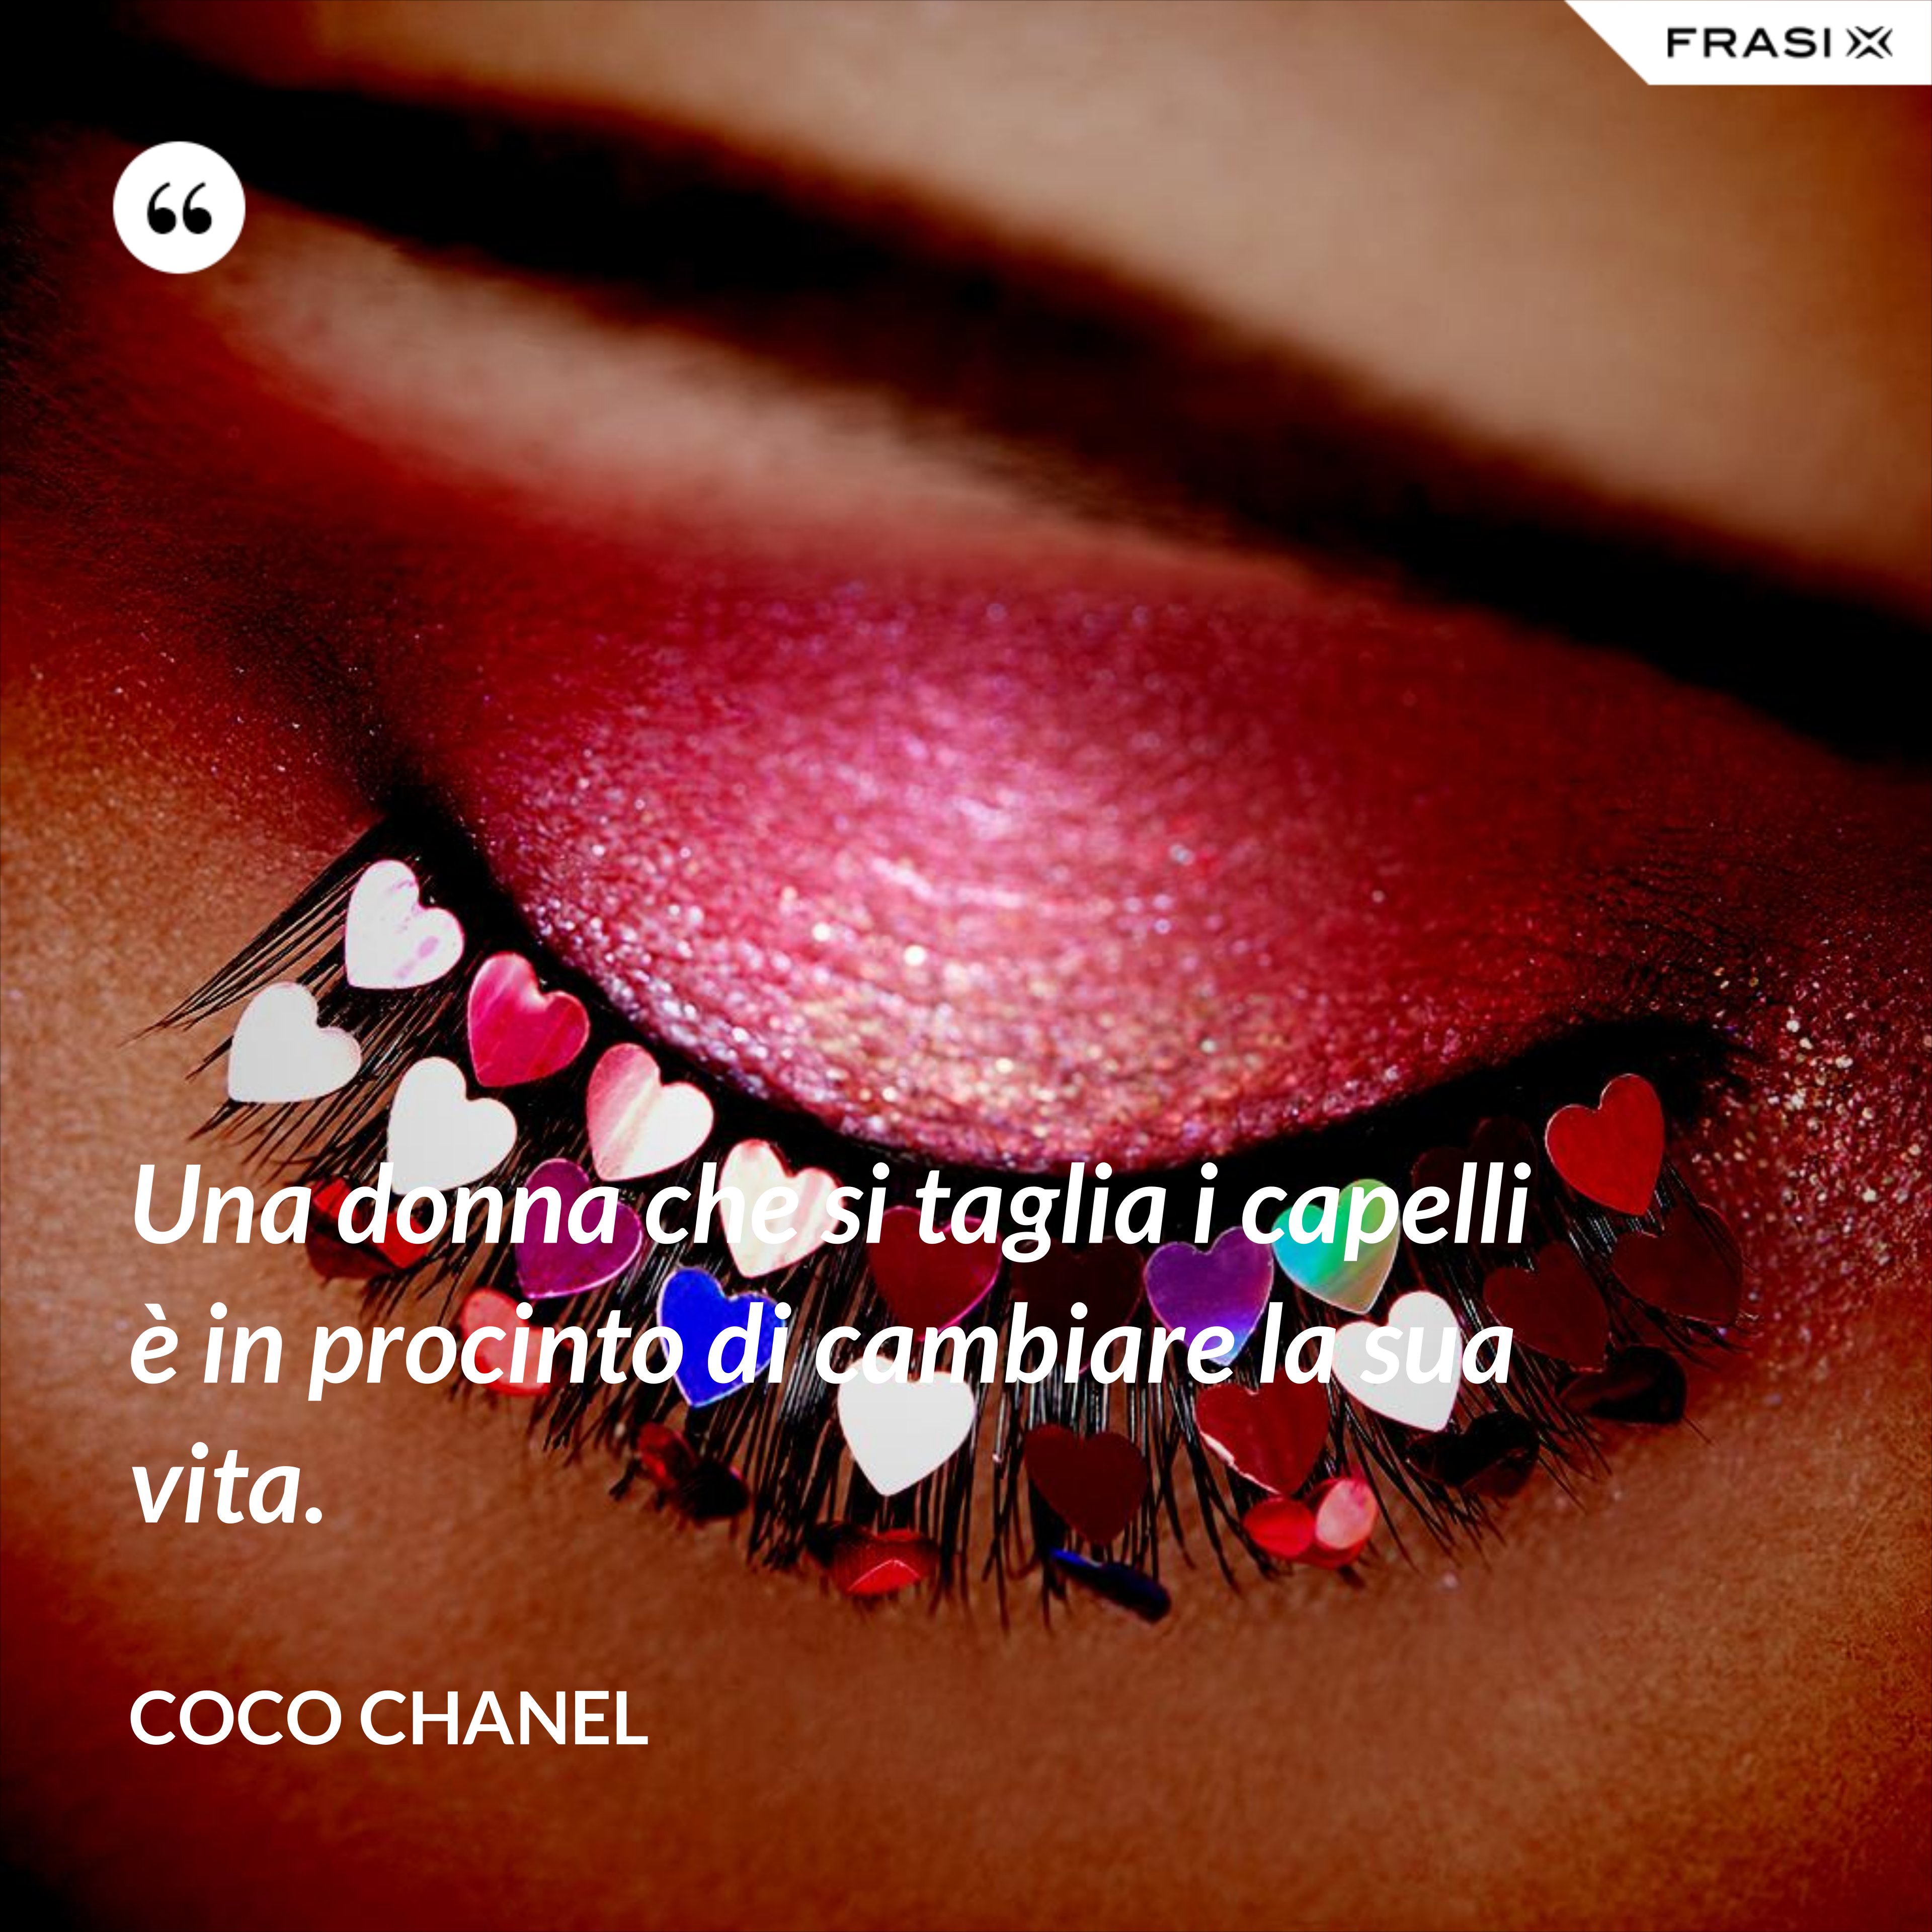 Una donna che si taglia i capelli è in procinto di cambiare la sua vita. - Coco Chanel